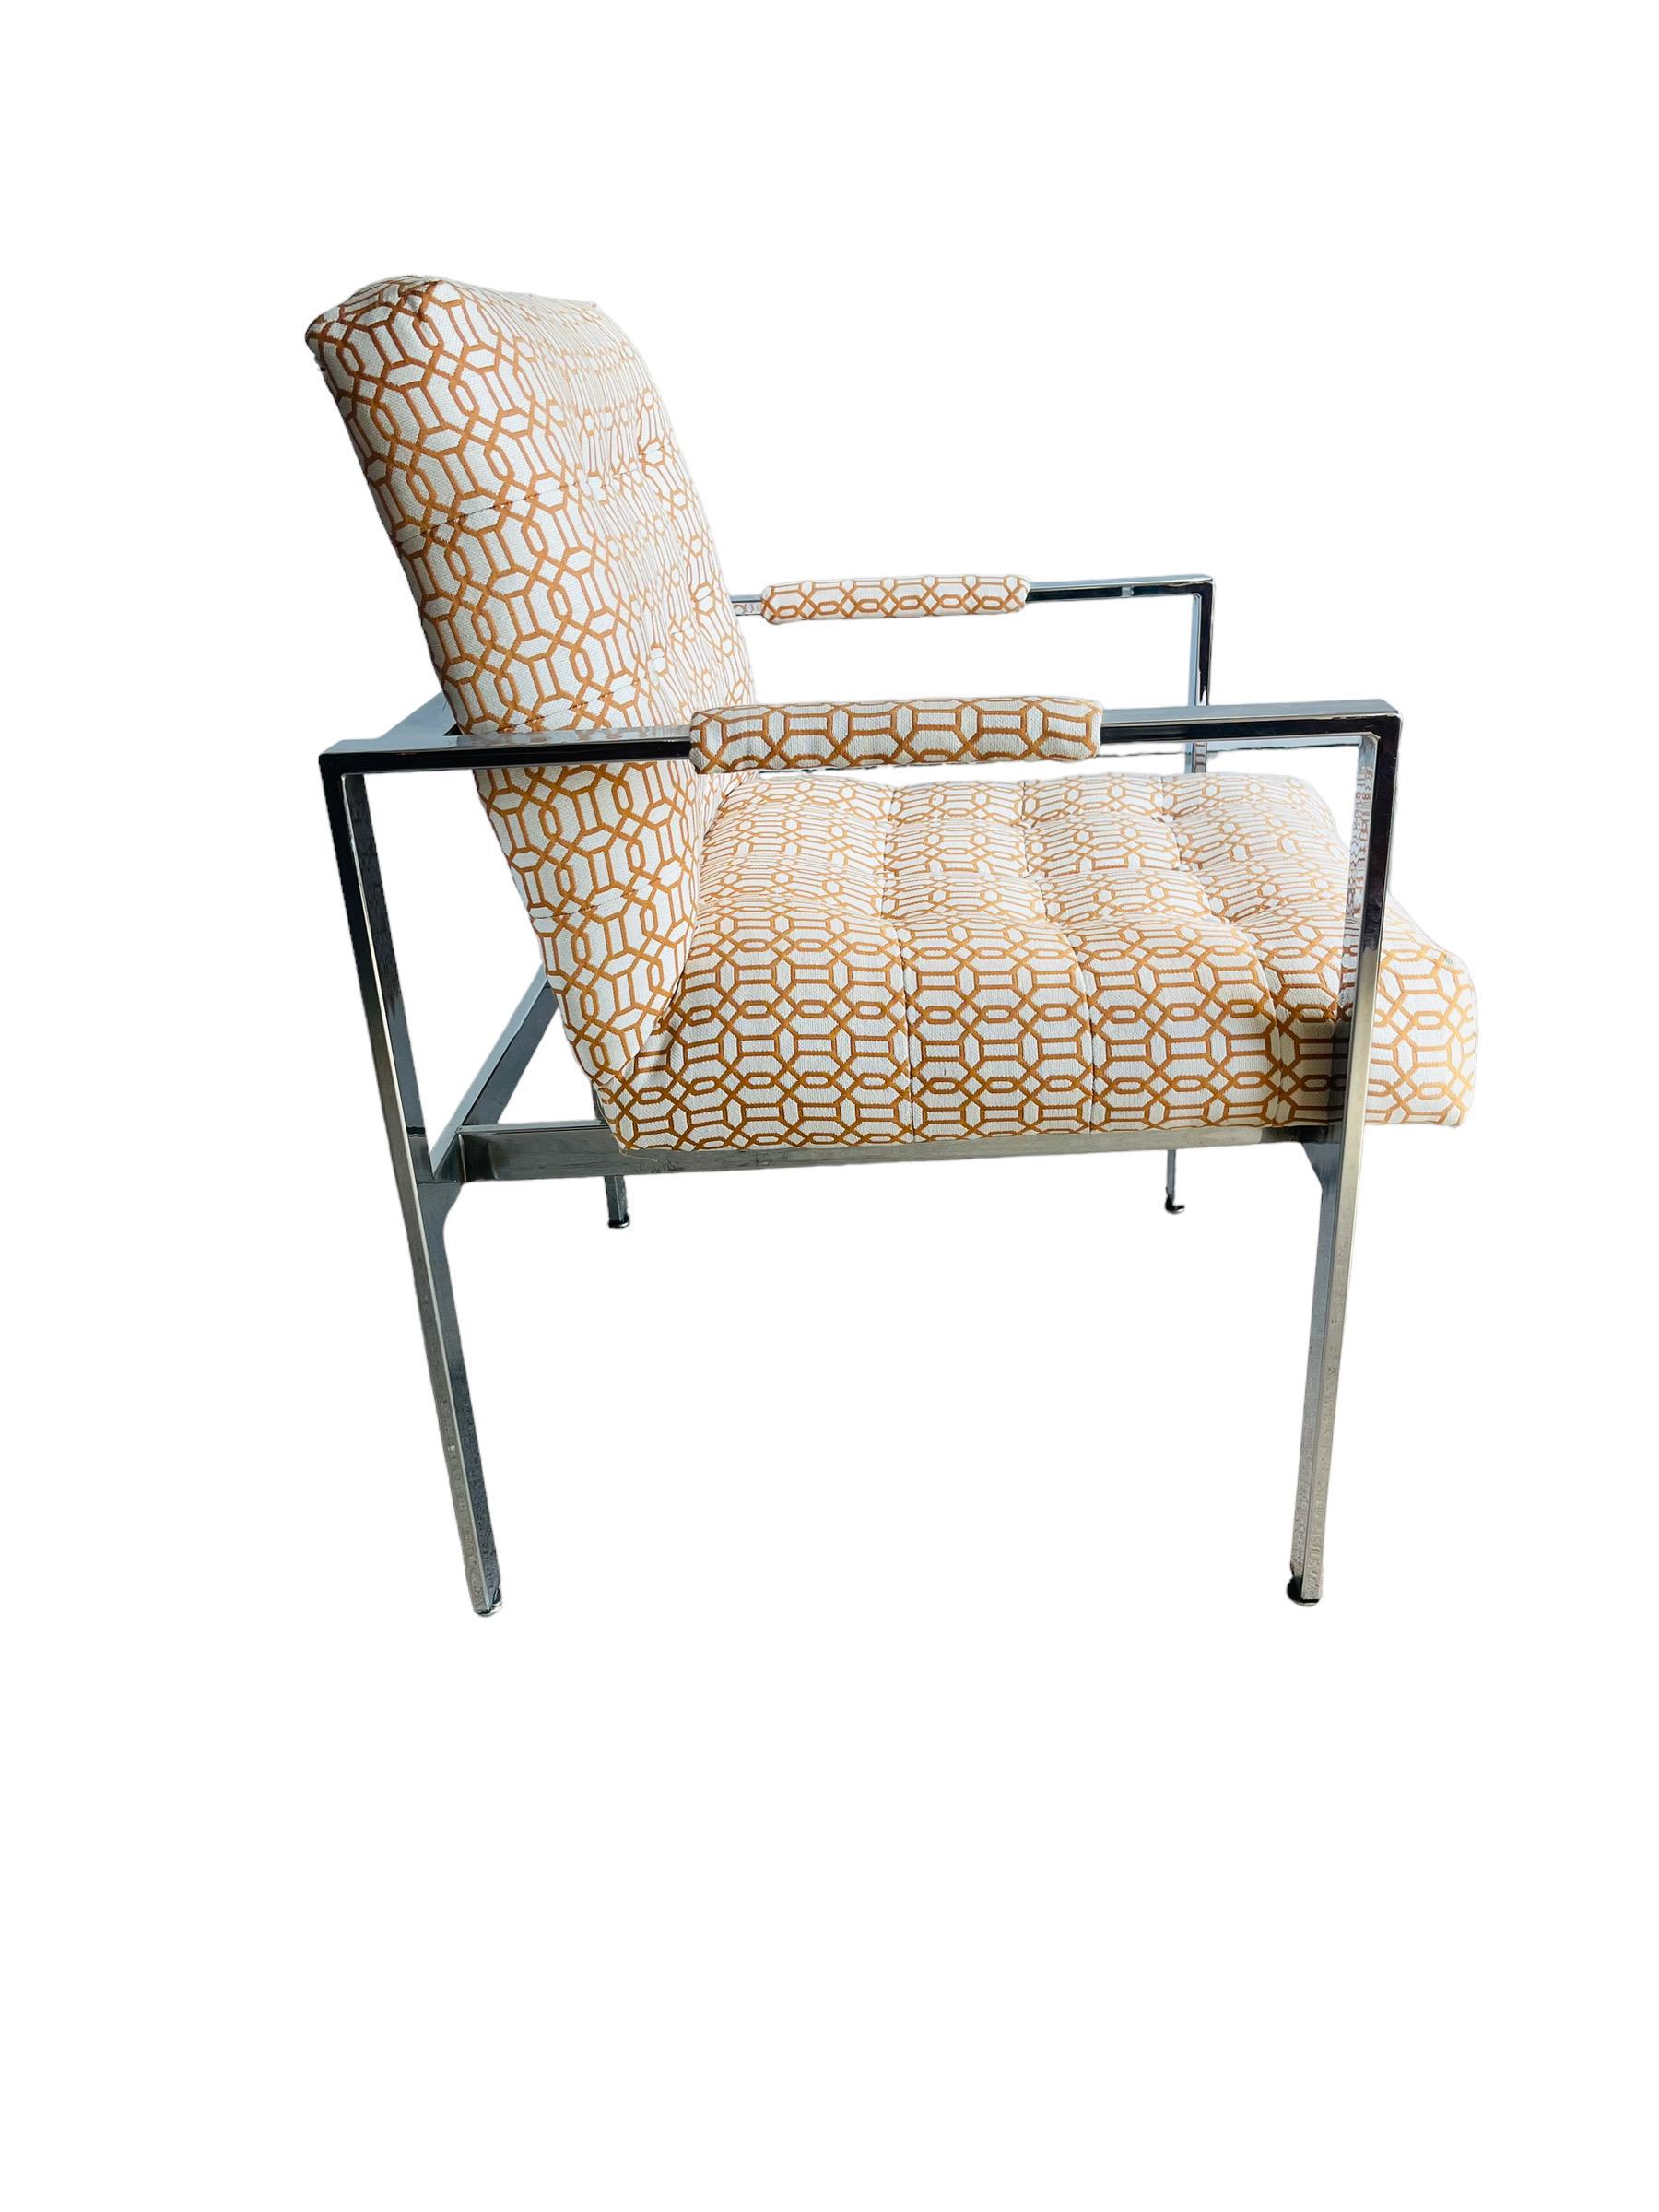 Magnifique chaise chromée rembourrée du milieu du siècle dernier dans le style de Milo Baughman. 

Mesure 24